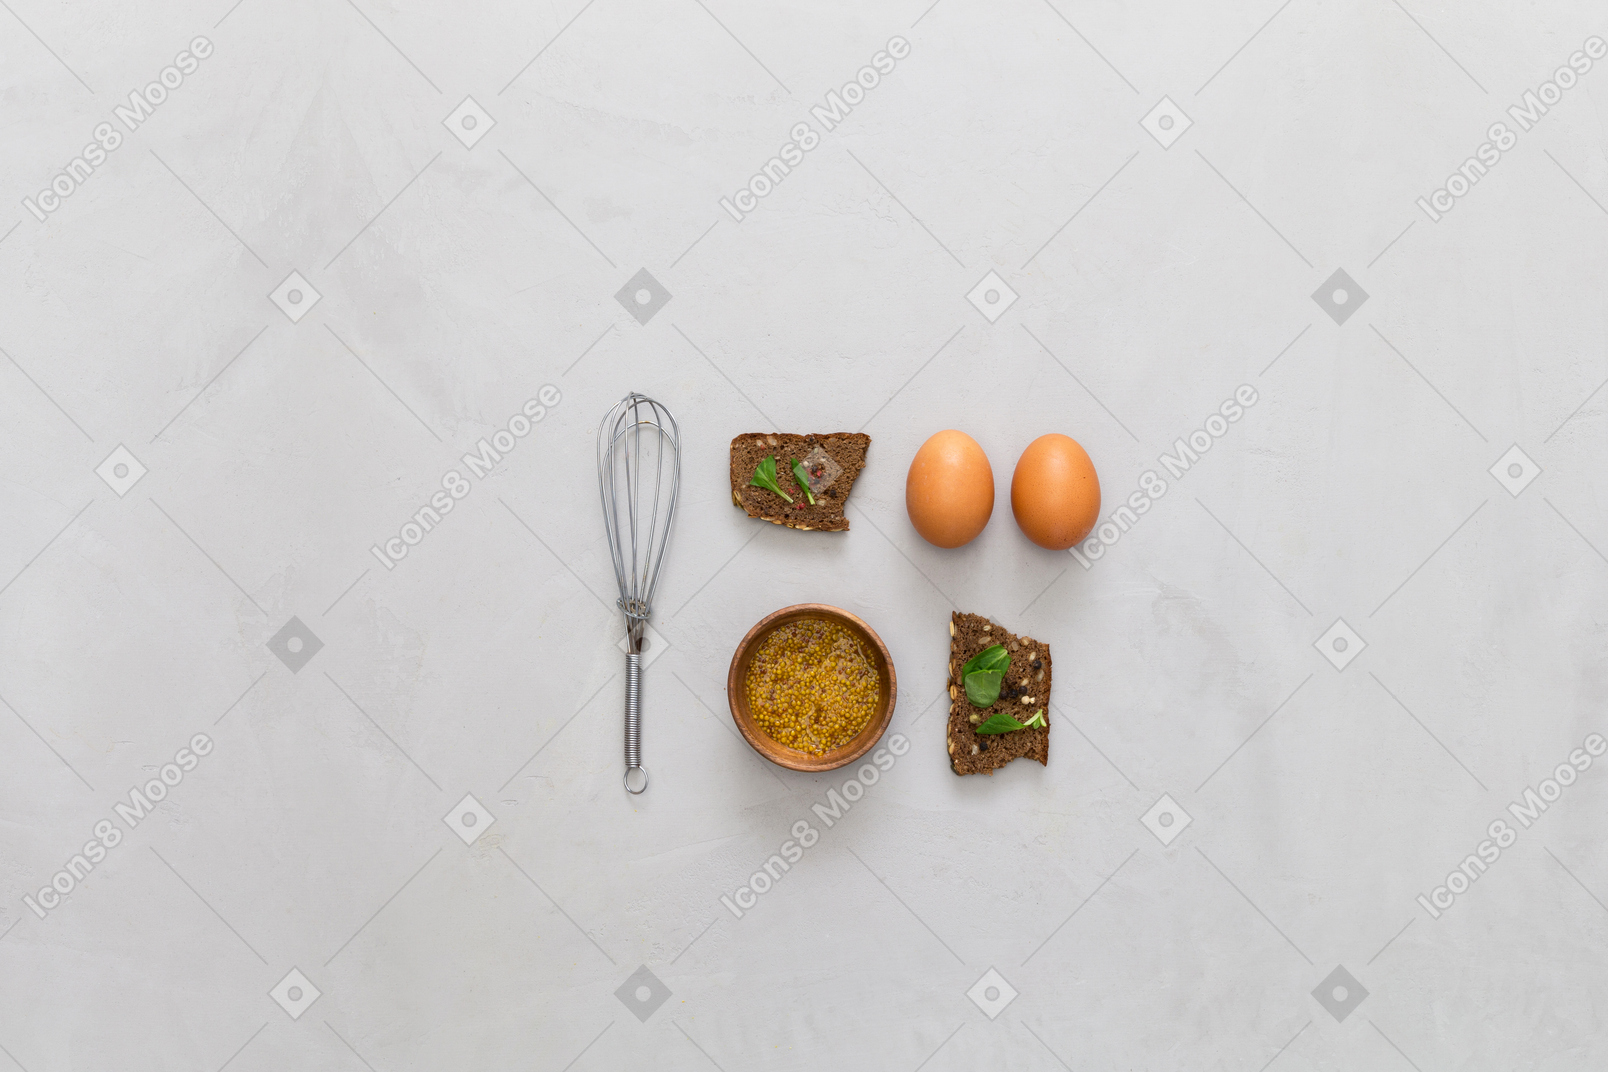 Ei und snack sind perfekt zum frühstück